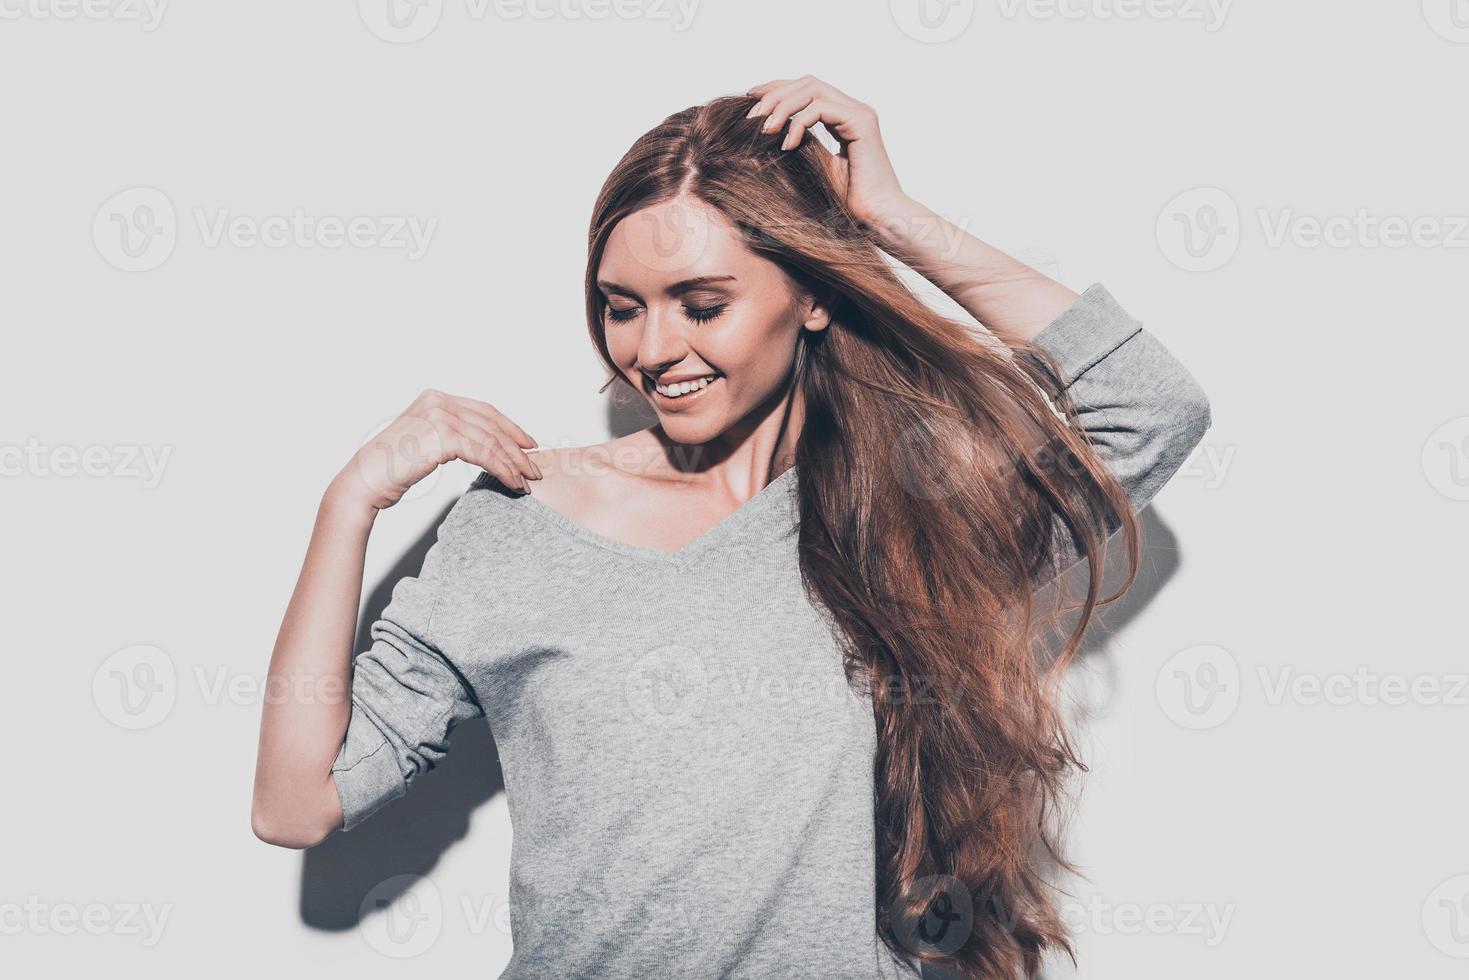 beleza alegre. mulher jovem e atraente segurando a mão no cabelo e sorrindo em pé contra um fundo cinza foto